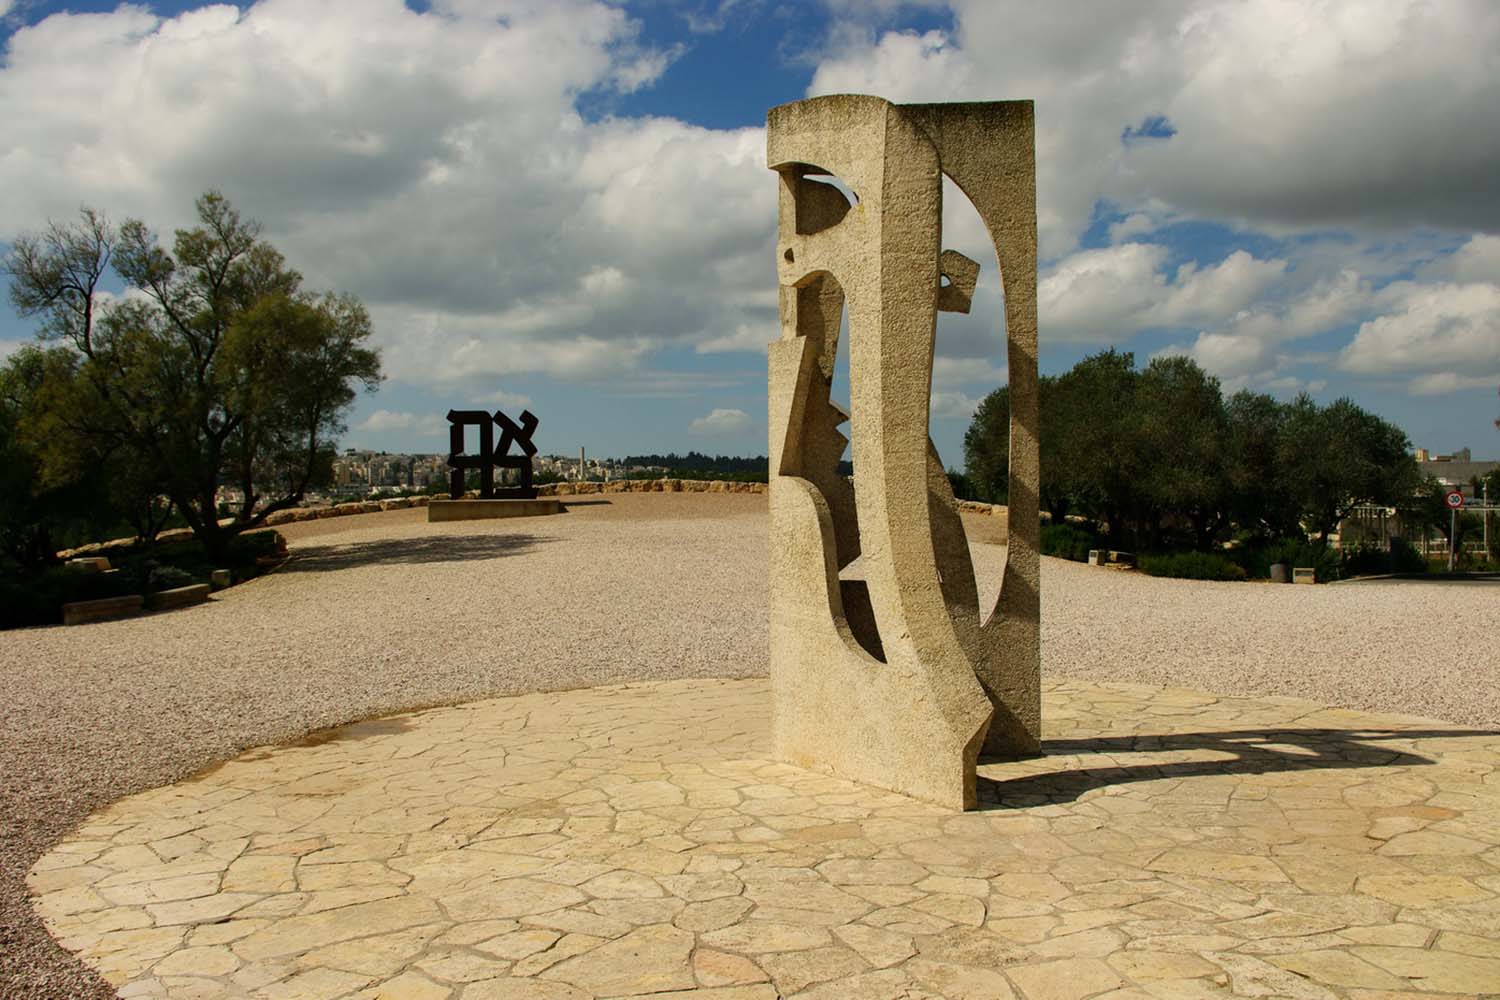 בגן מוזיאון ישראל: פסל של פבלו פיקאסו (מלפנים), ופסל של רוברט אינדיאנה. השבילים עשויים מאבני חצץ (צילום: ויקיפדיה)